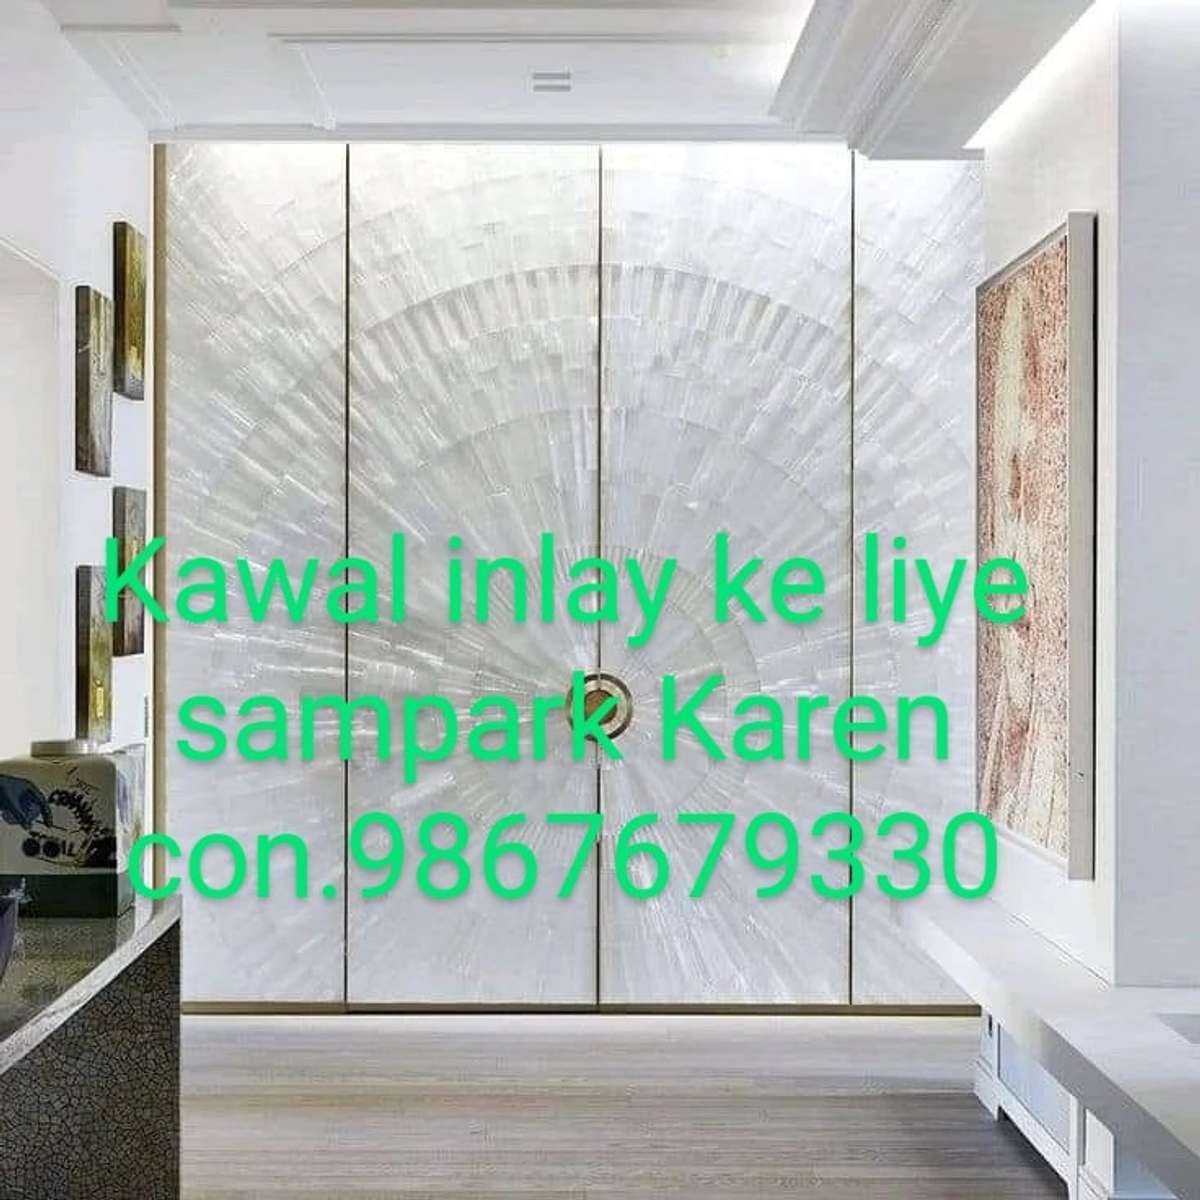 inlay ke liye sampark Karen bhai 9867689330